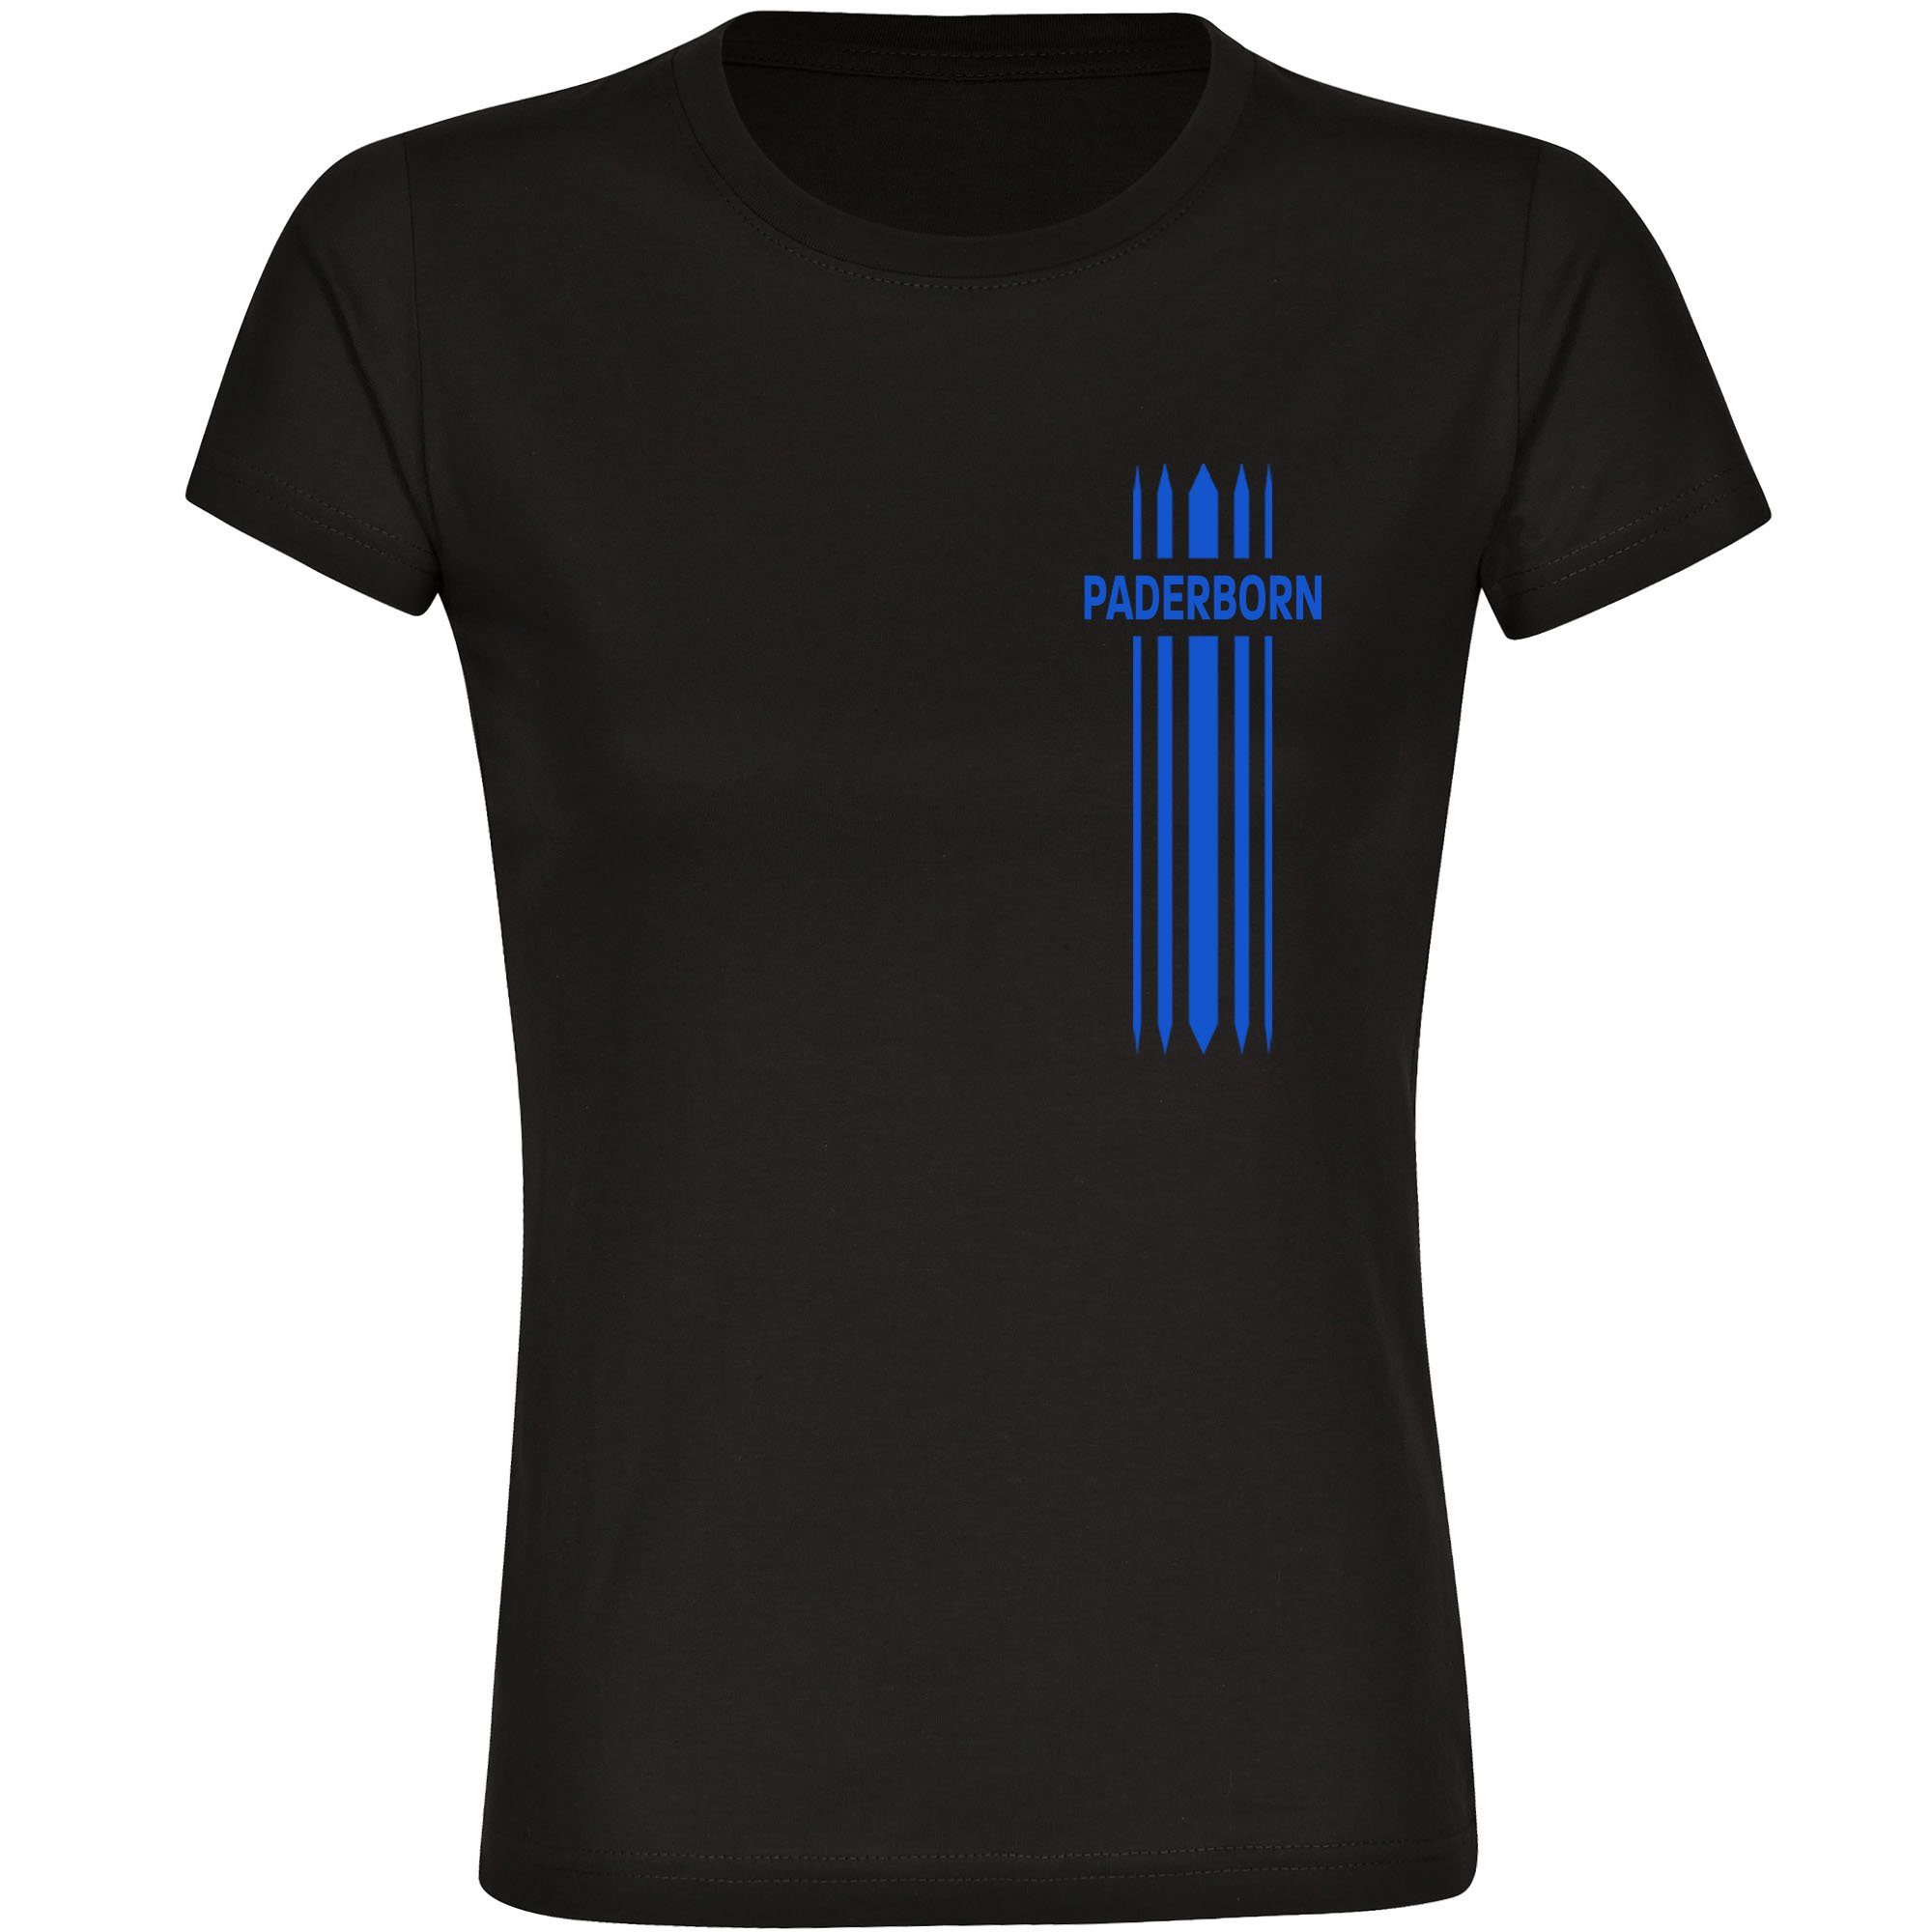 multifanshop T-Shirt Damen Paderborn - Streifen - Frauen